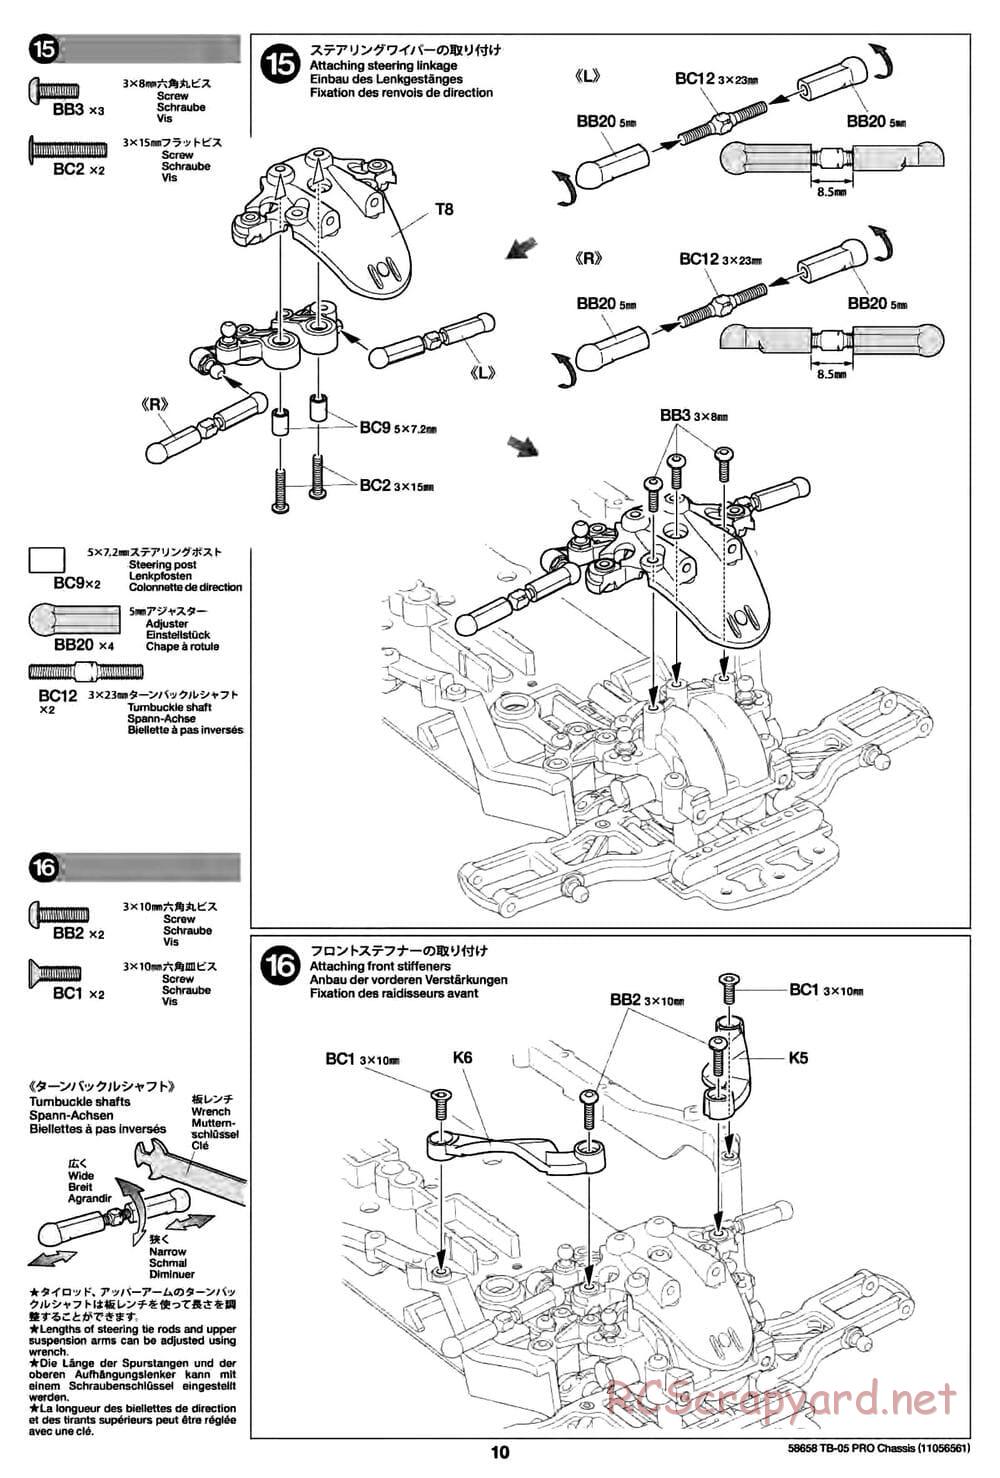 Tamiya - TB-05 Pro Chassis - Manual - Page 10